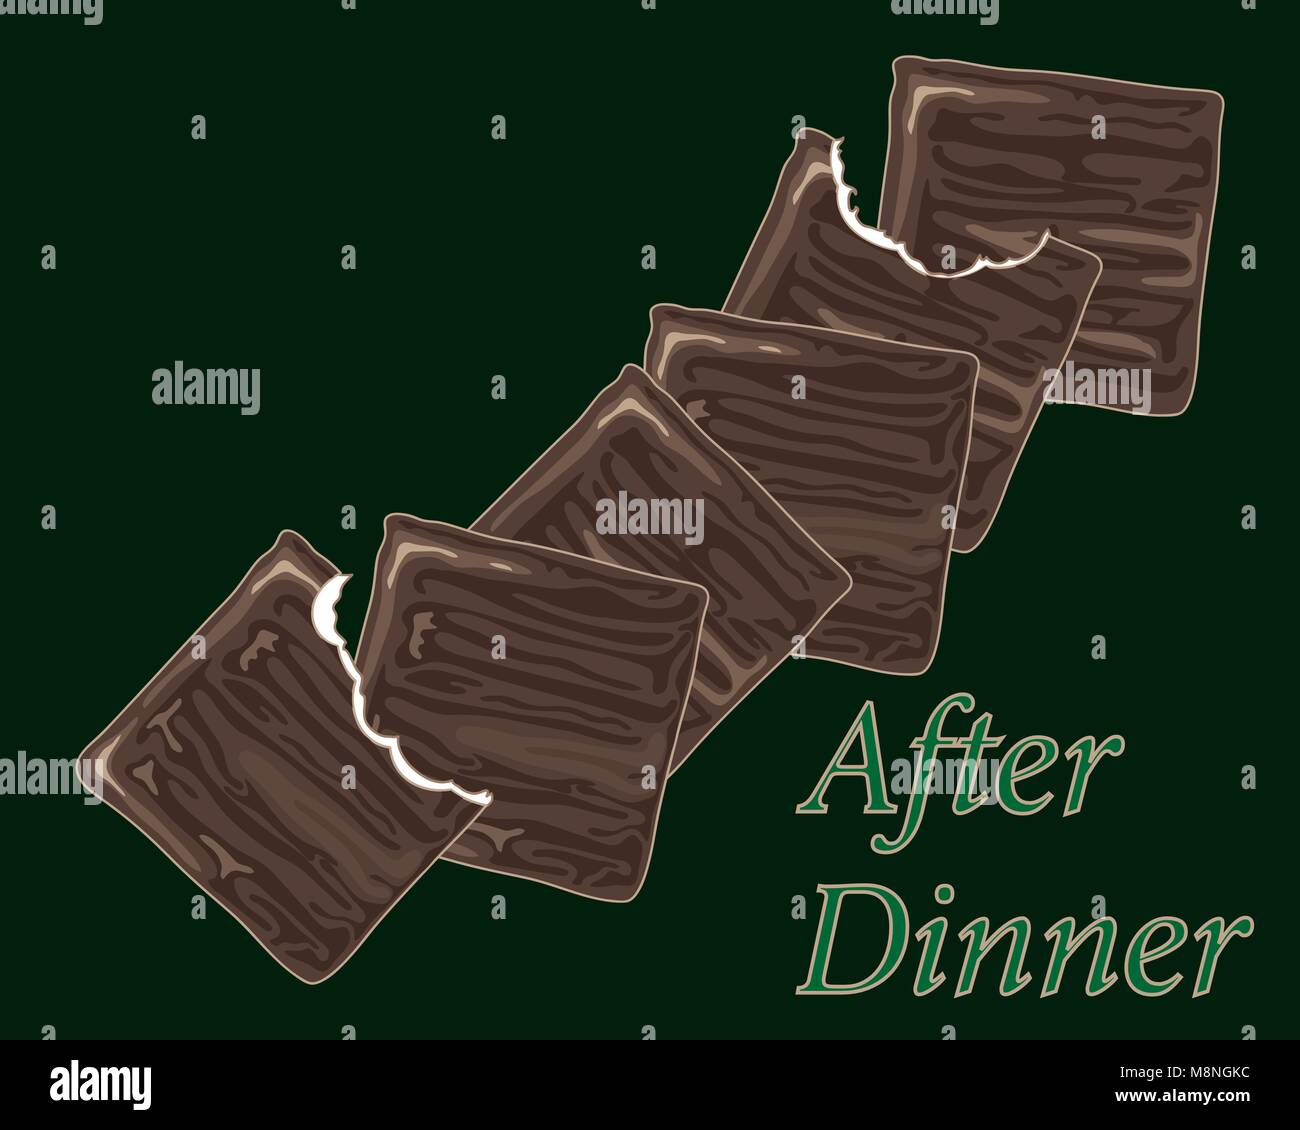 Un vecteur illustration en format eps 8 de chocolat traditionnel après le dîner, les menthes minces en les piquant sur un fond vert foncé Illustration de Vecteur